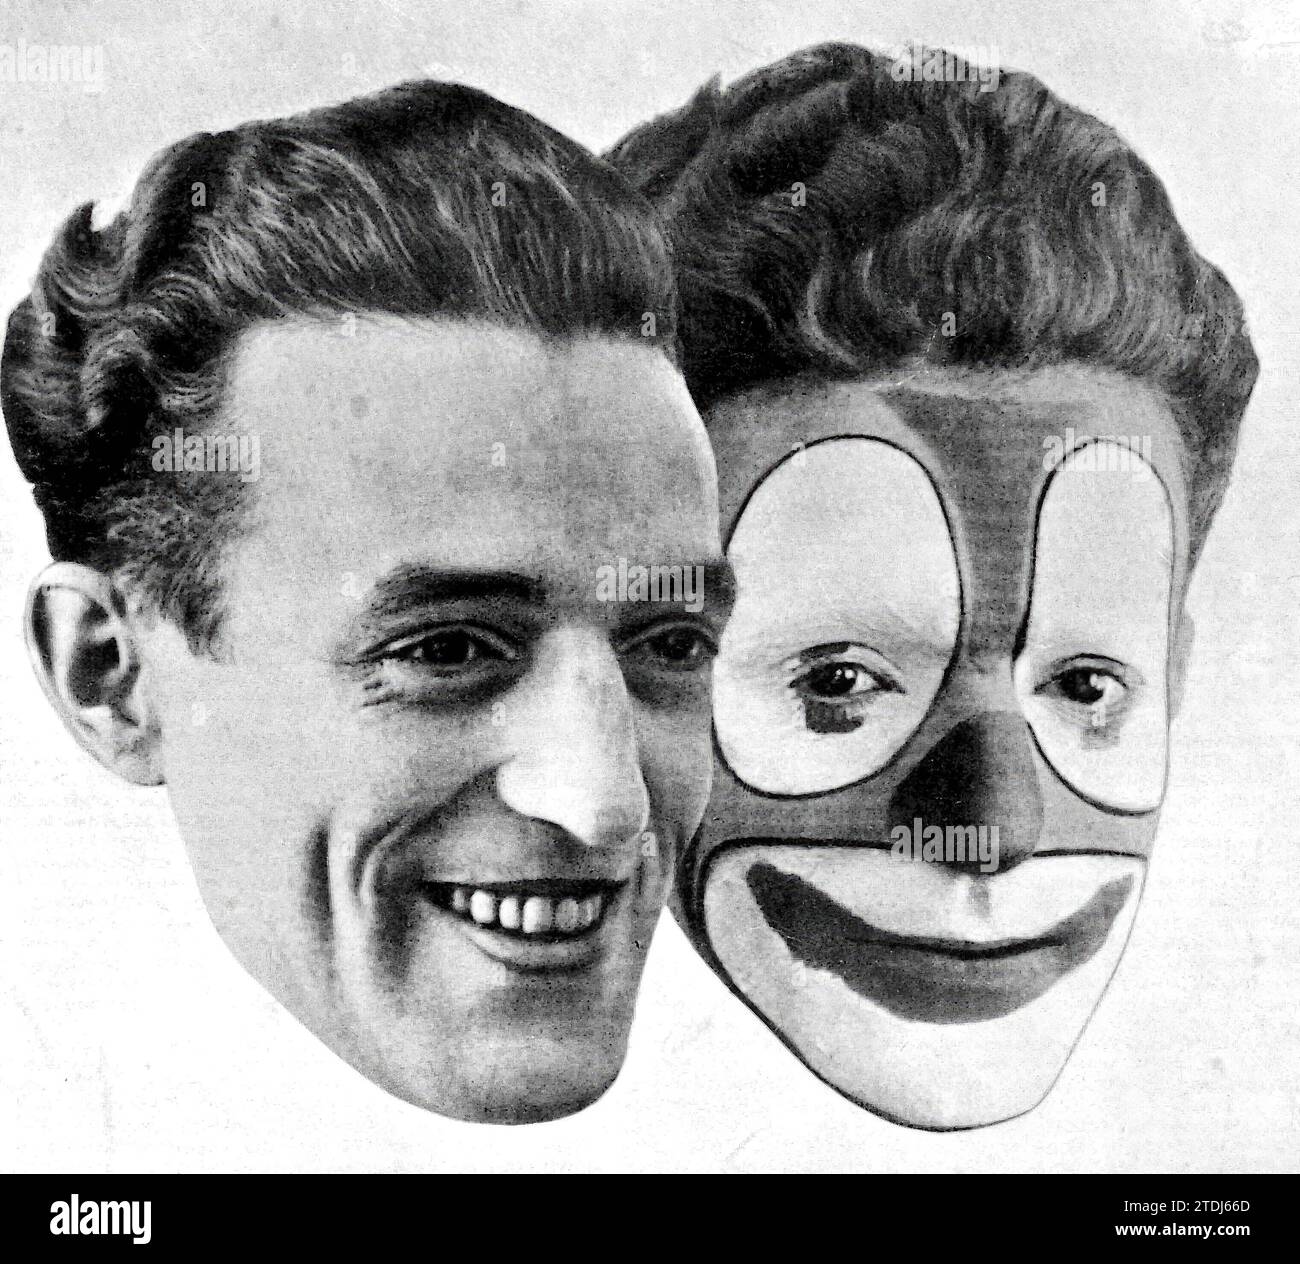 12/31/1929. Nahaufnahme des Gesichts des berühmten Komikers Rampe (einer als Clown gemalt und der andere ungemalt). Quelle: Album/Archivo ABC Stockfoto